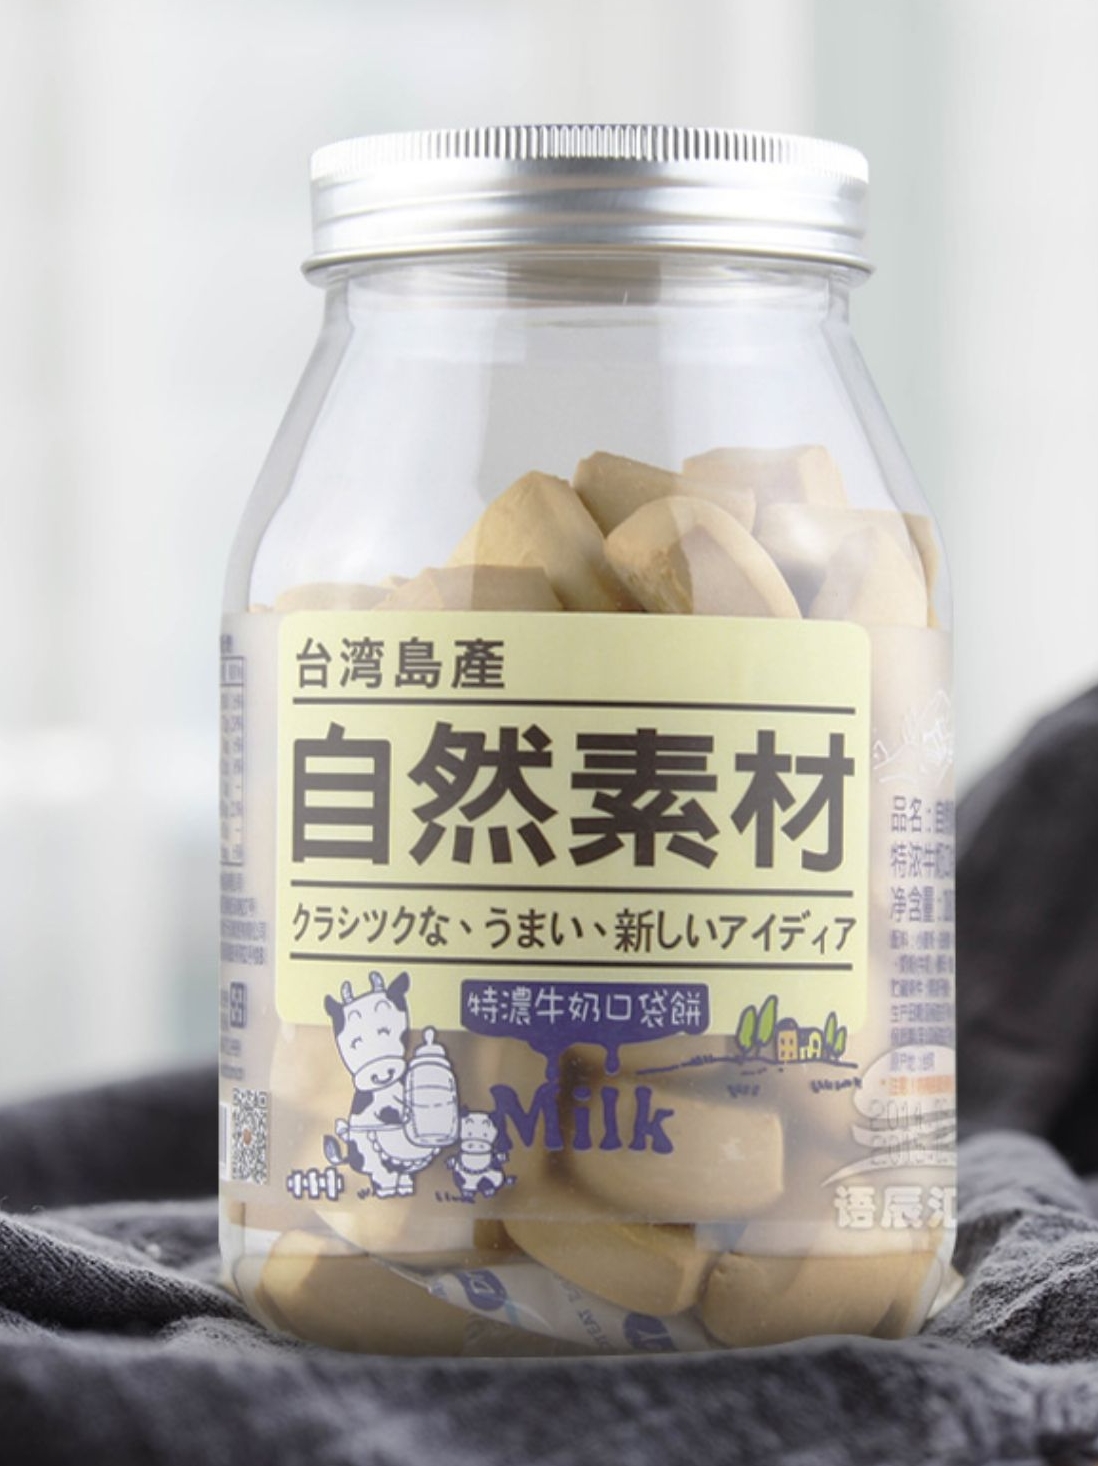 自然素材 台湾进口特浓牛奶口袋饼干